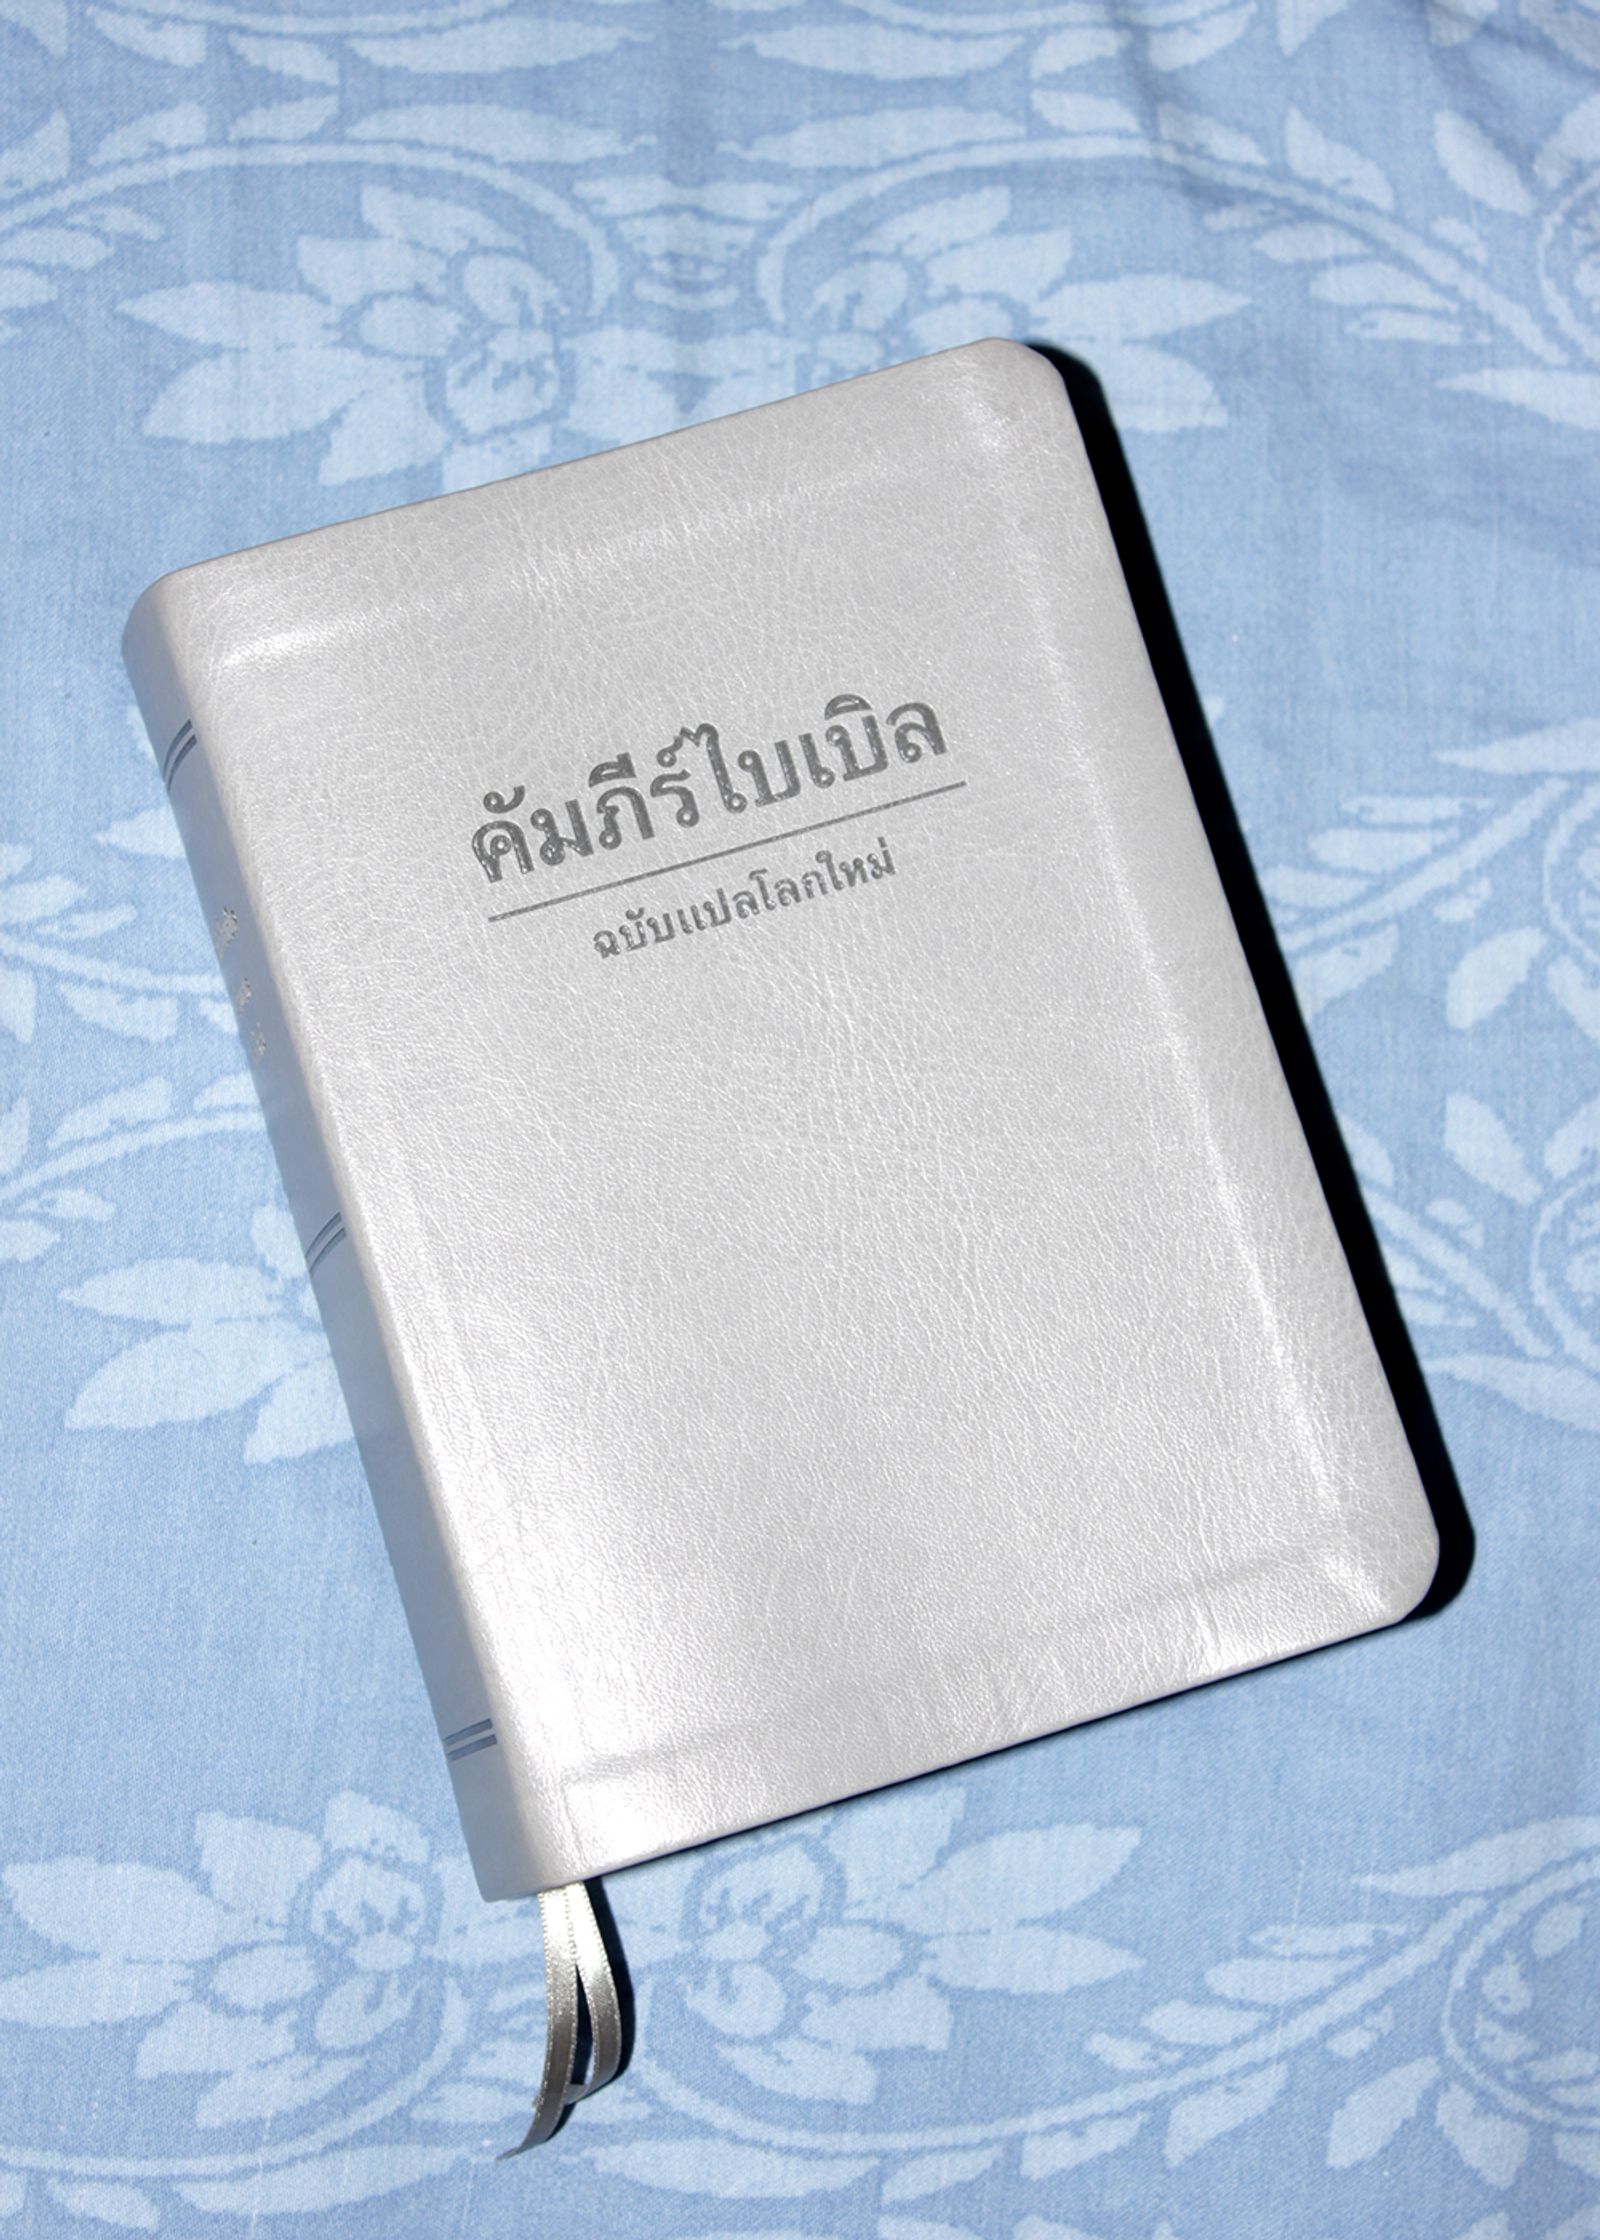 © Petra Vlčková - Bible in Thai translation.